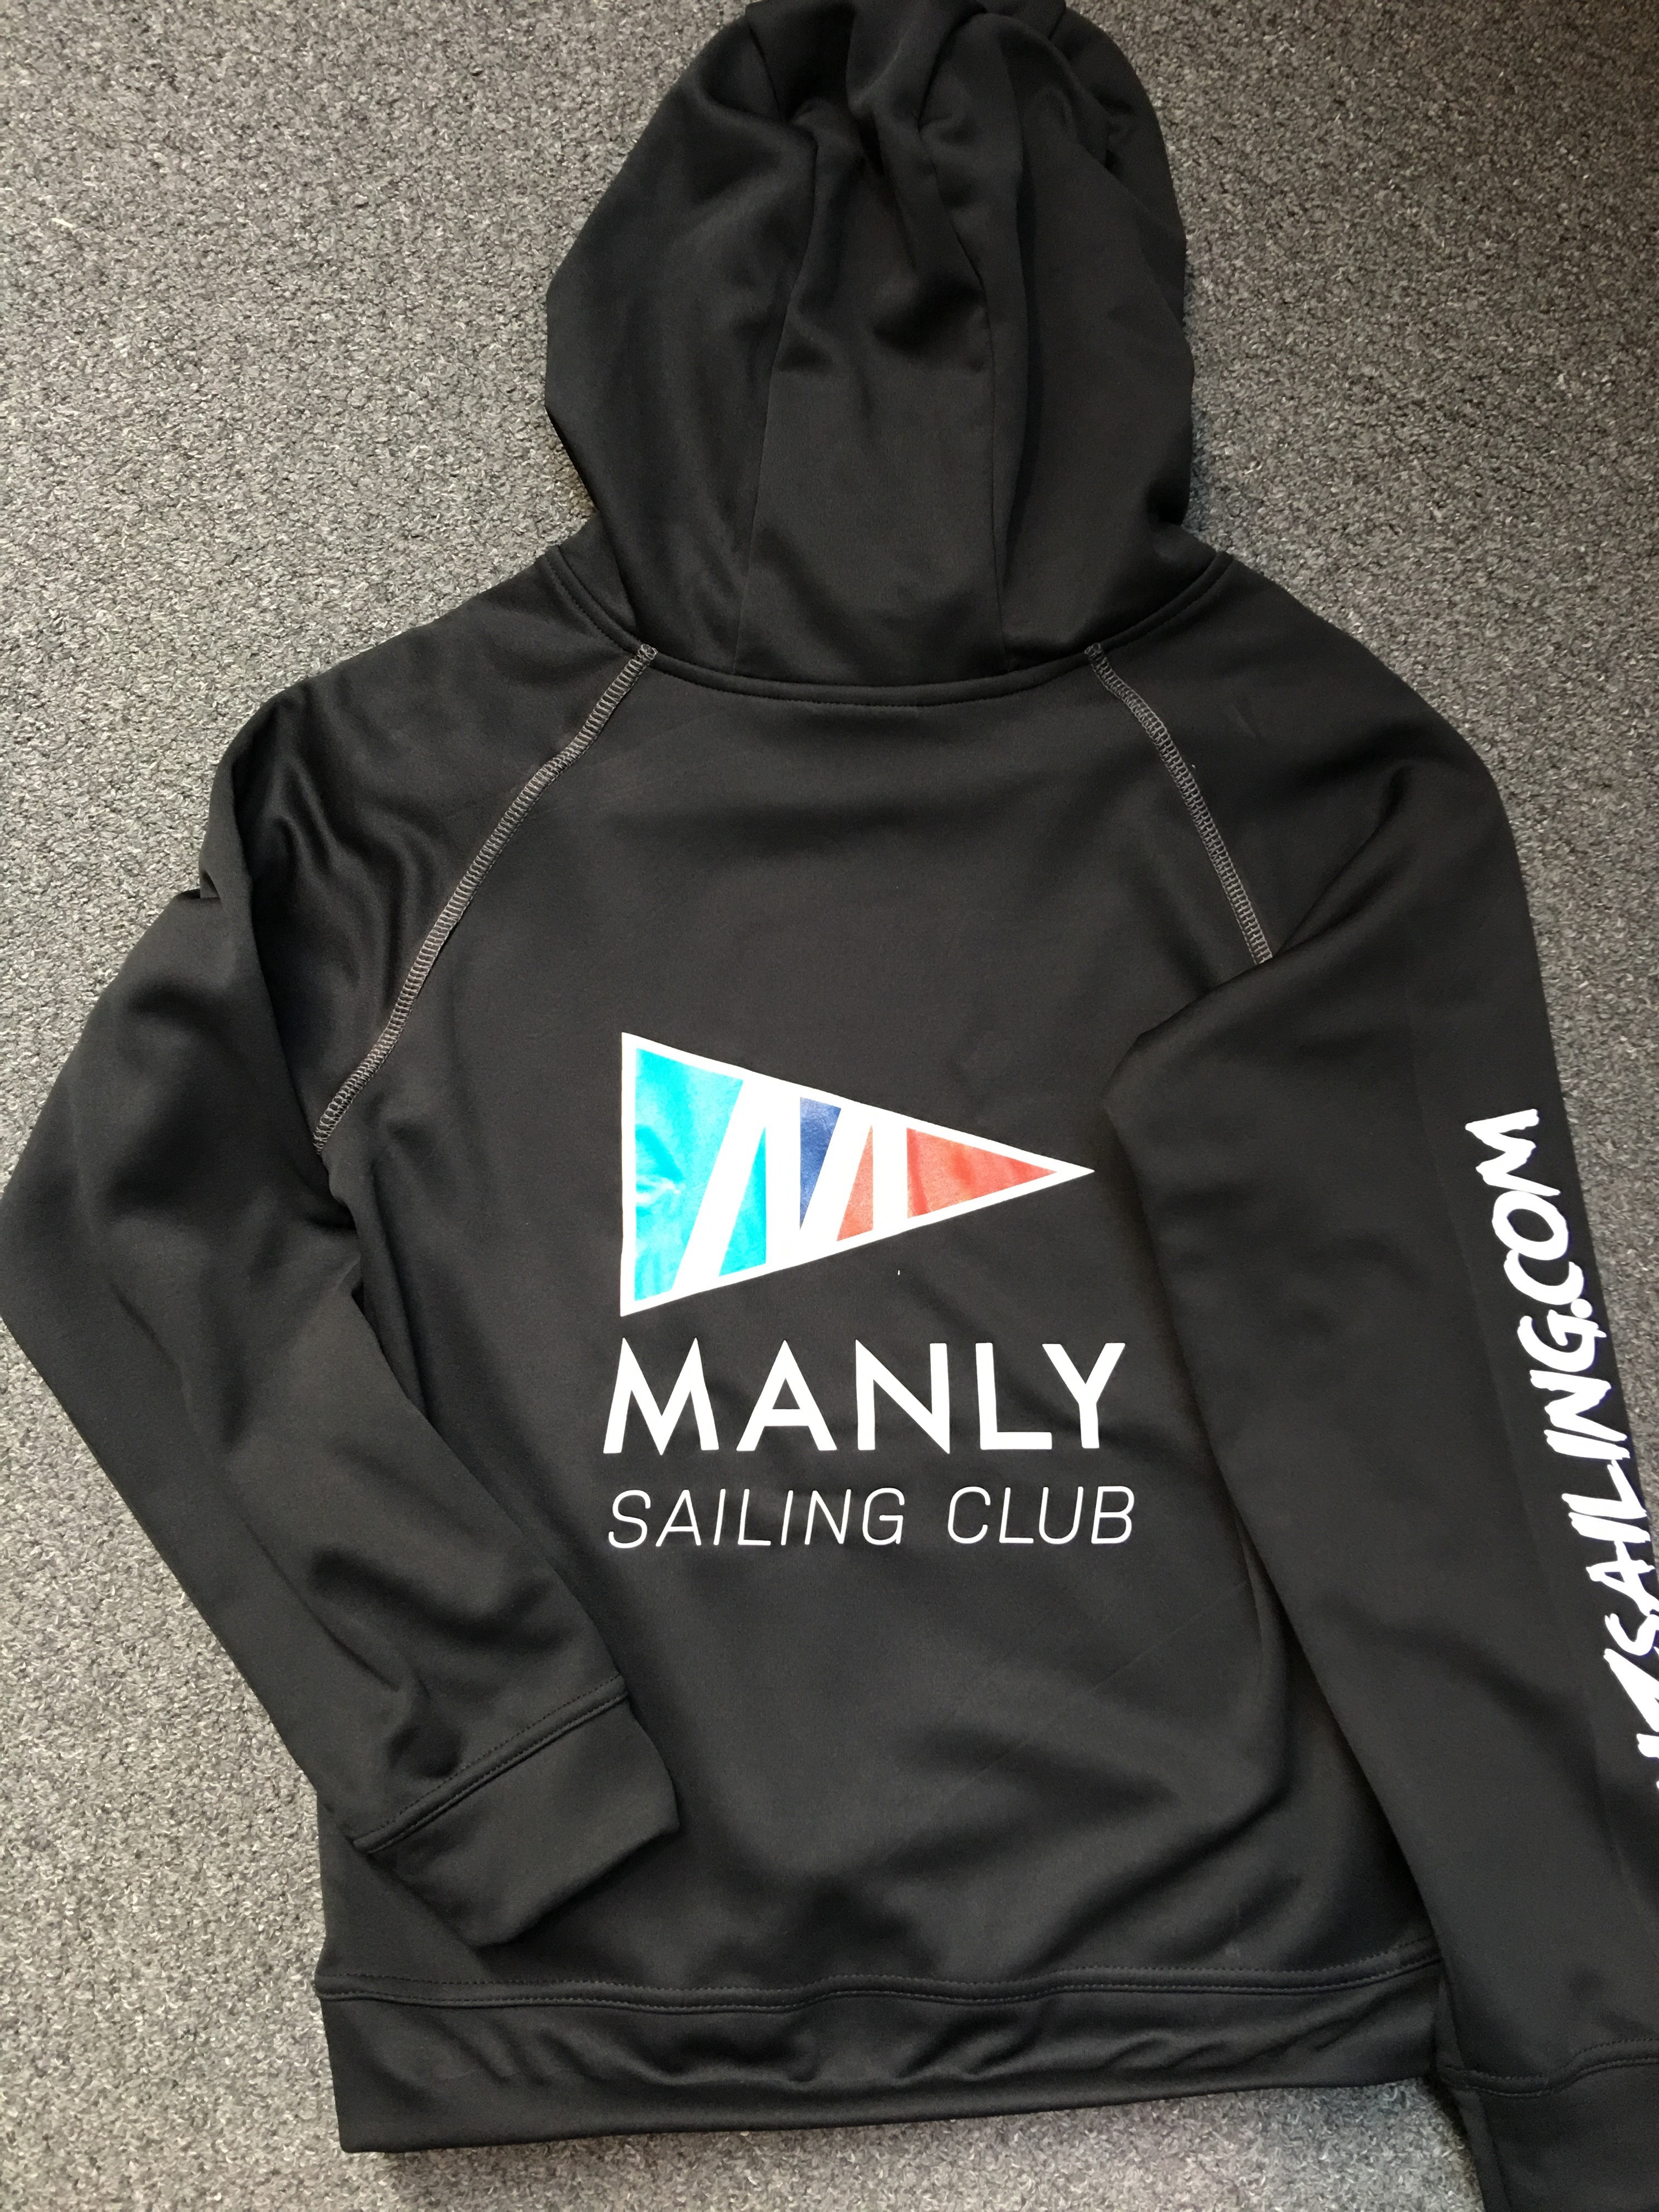 Manly Sailing Club Hoodie back _3_.JPG